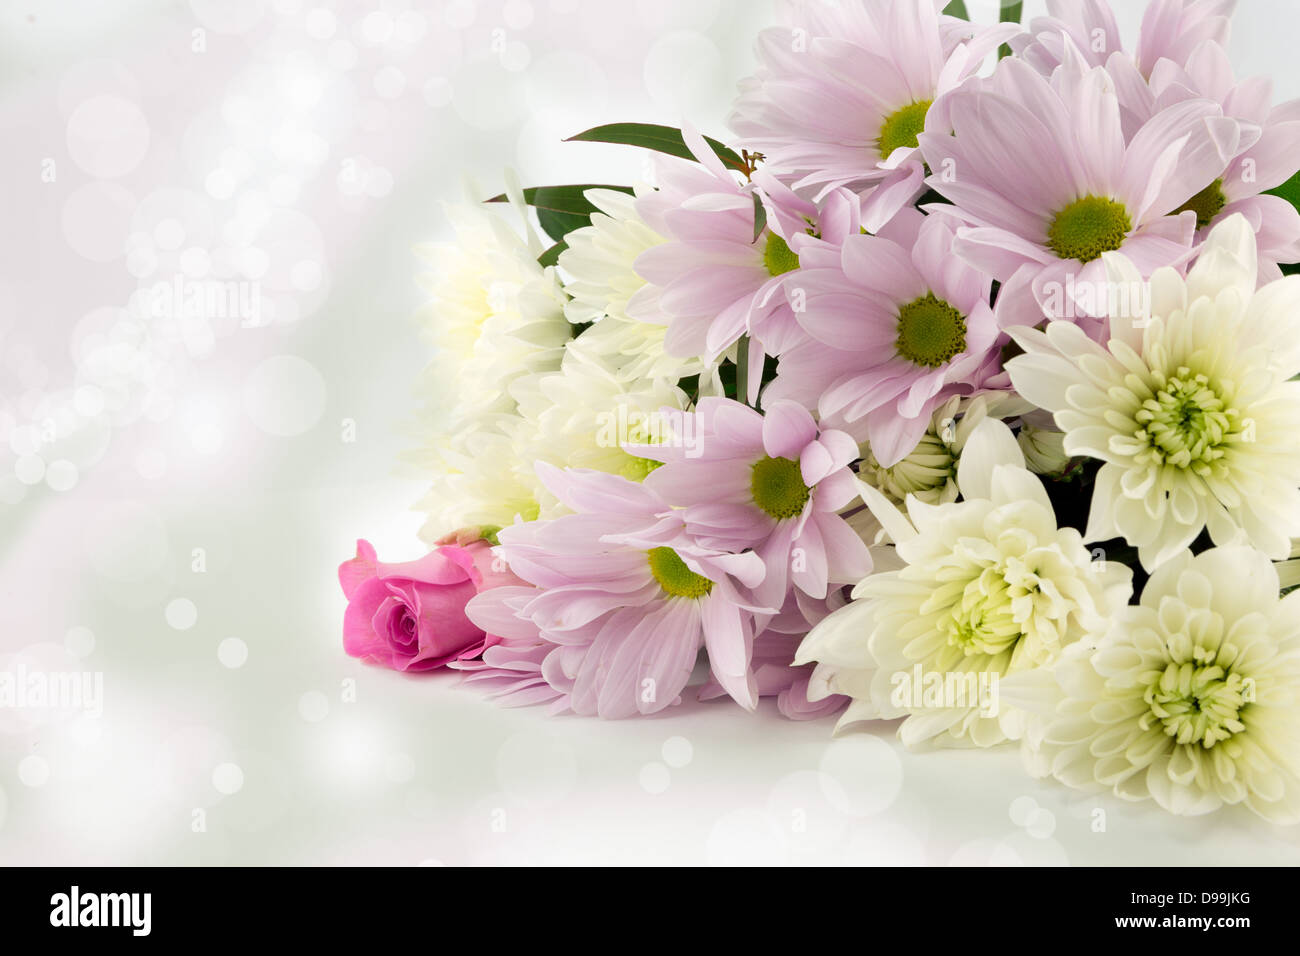 Pastell rosa und weiße Chrysantheme Bouquet mit einem weichen diffusen Hintergrund Stockfoto